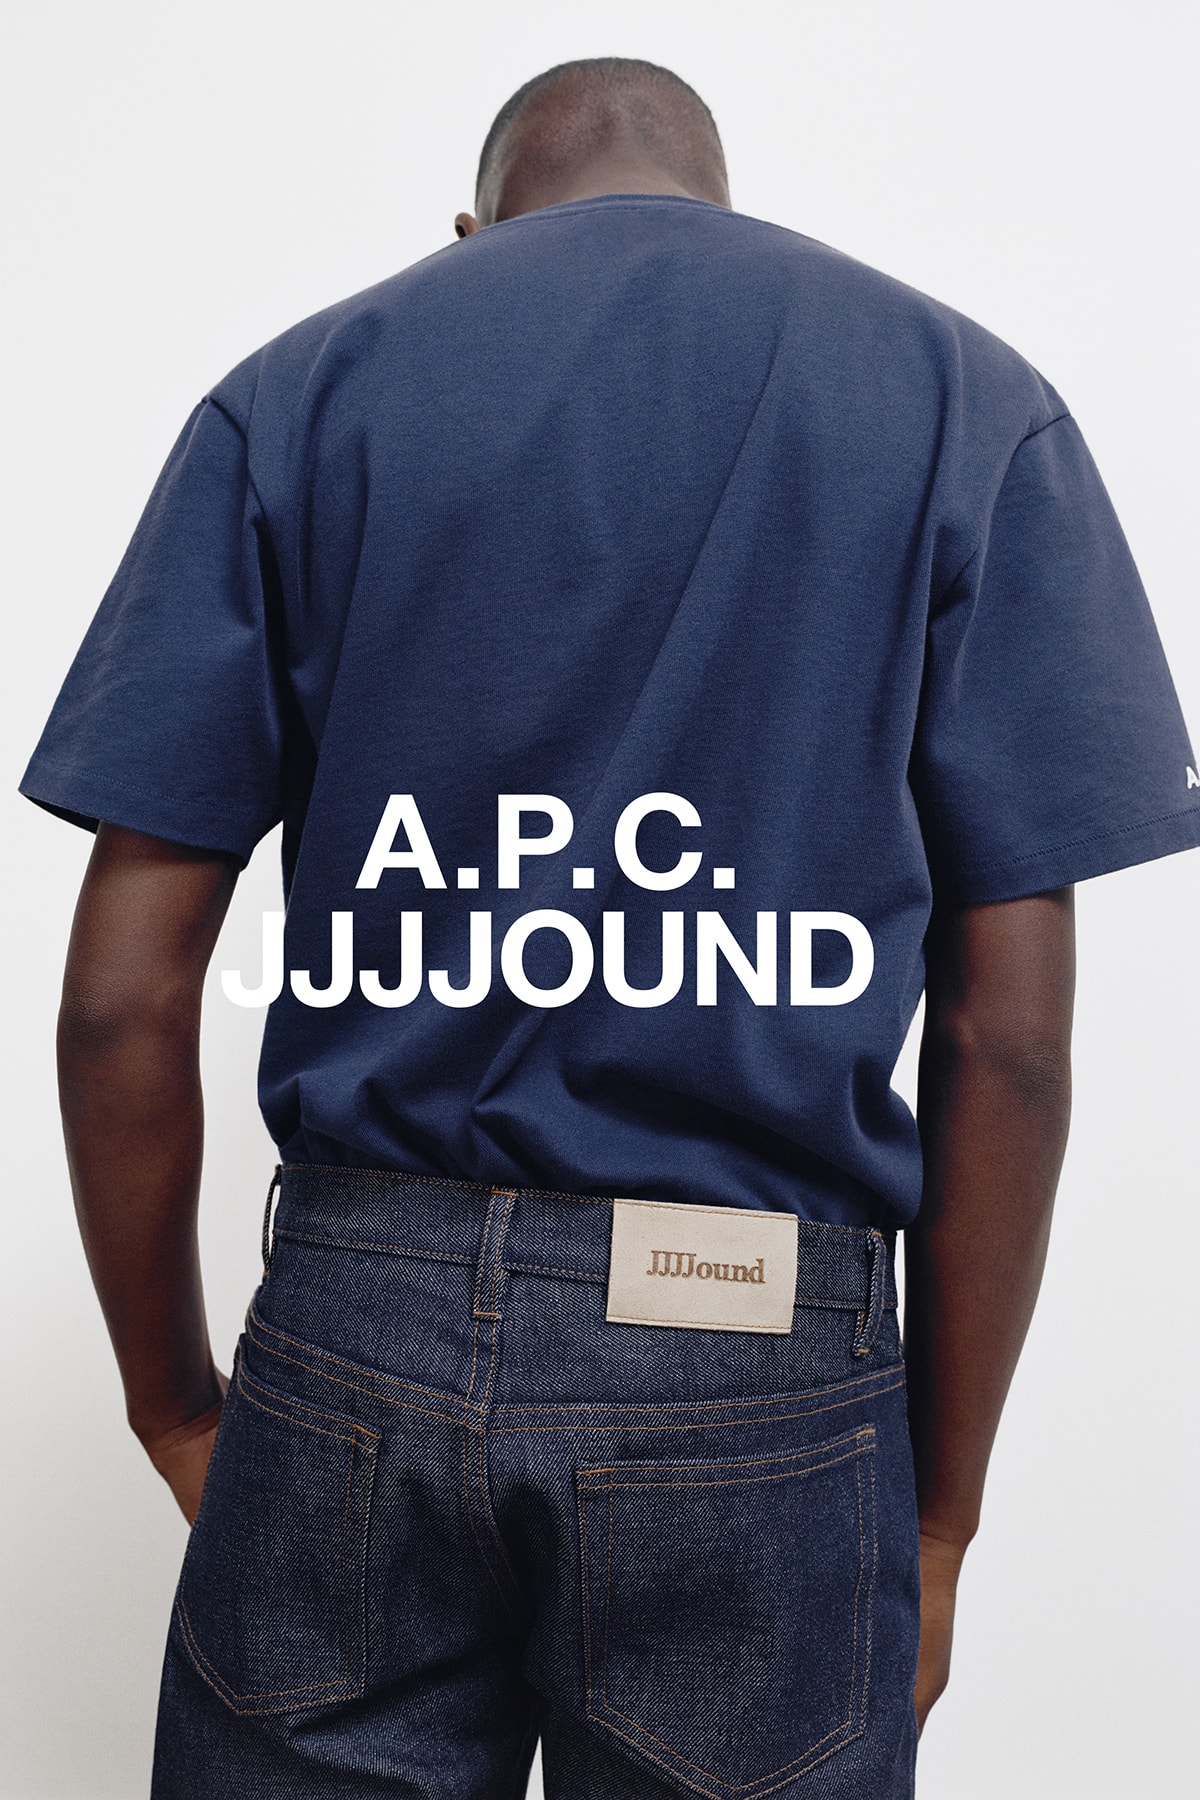 JJJJound x A.P.C. Collection Lookbook T-Shirt Dark Navy Blue